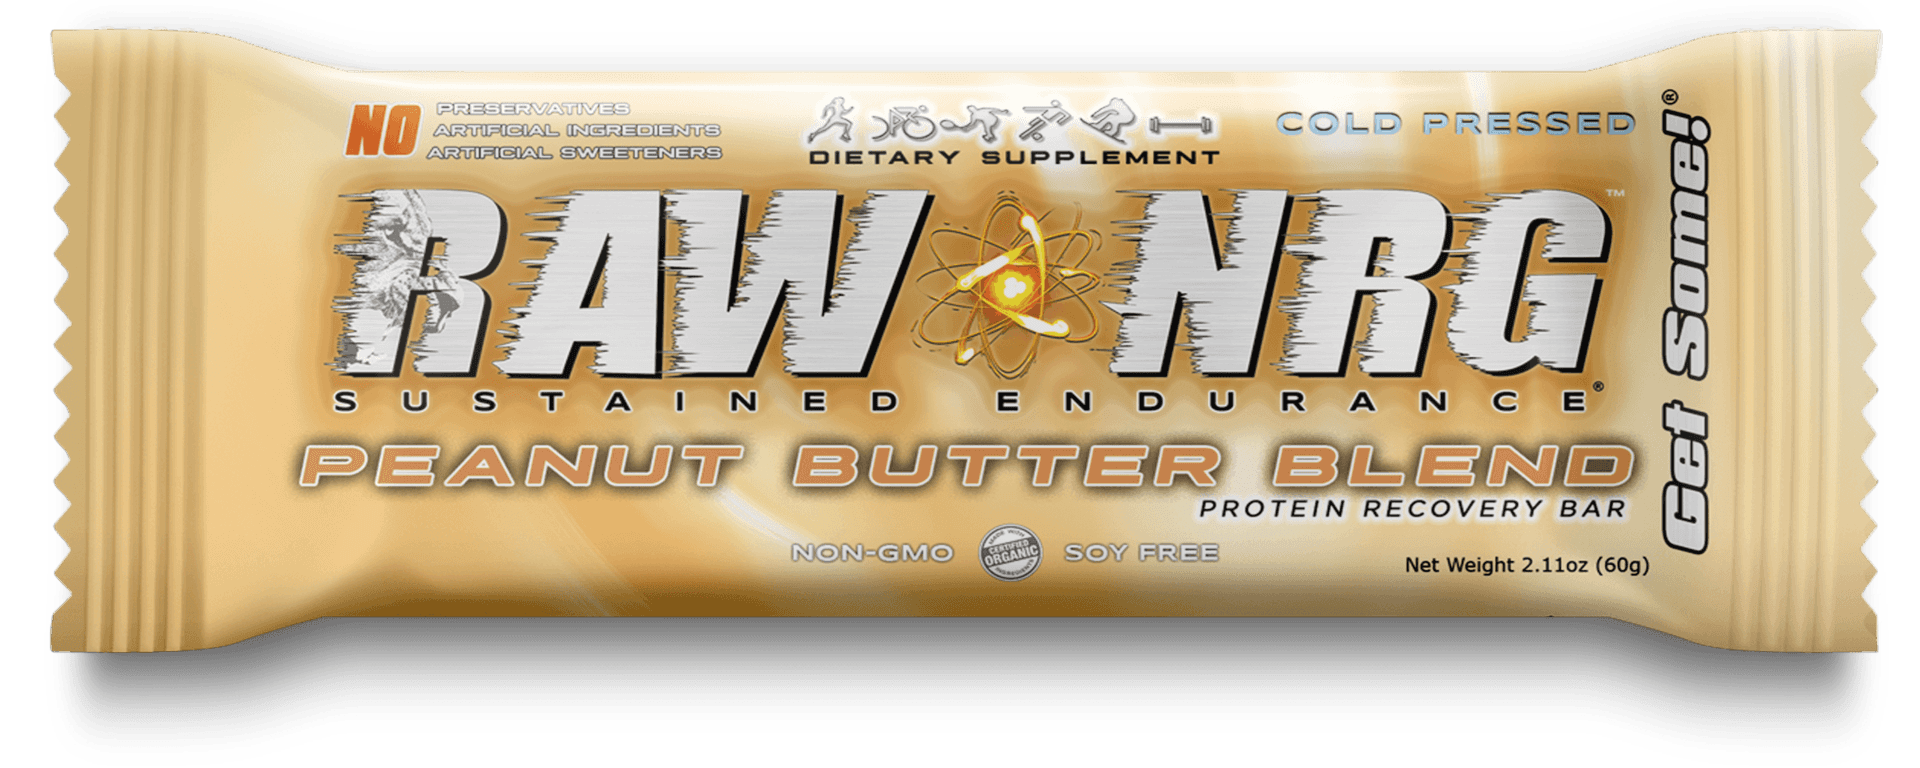 Protein Bar - Raw Nrg